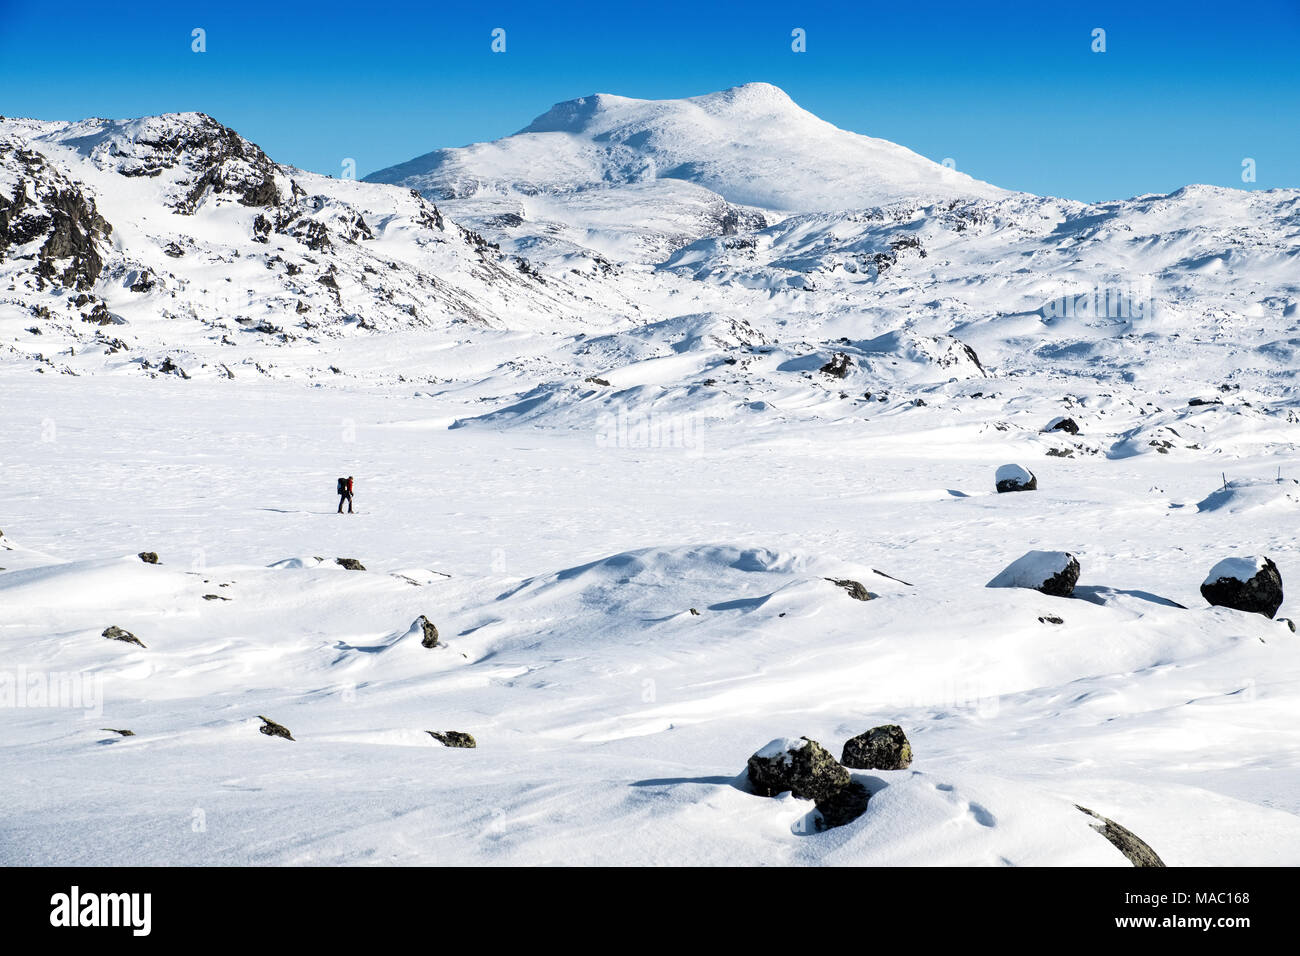 Cross country Skier im Winter Landschaft im Norden Schwedens mit den Bergen von Kebnekaise in distnace Stockfoto